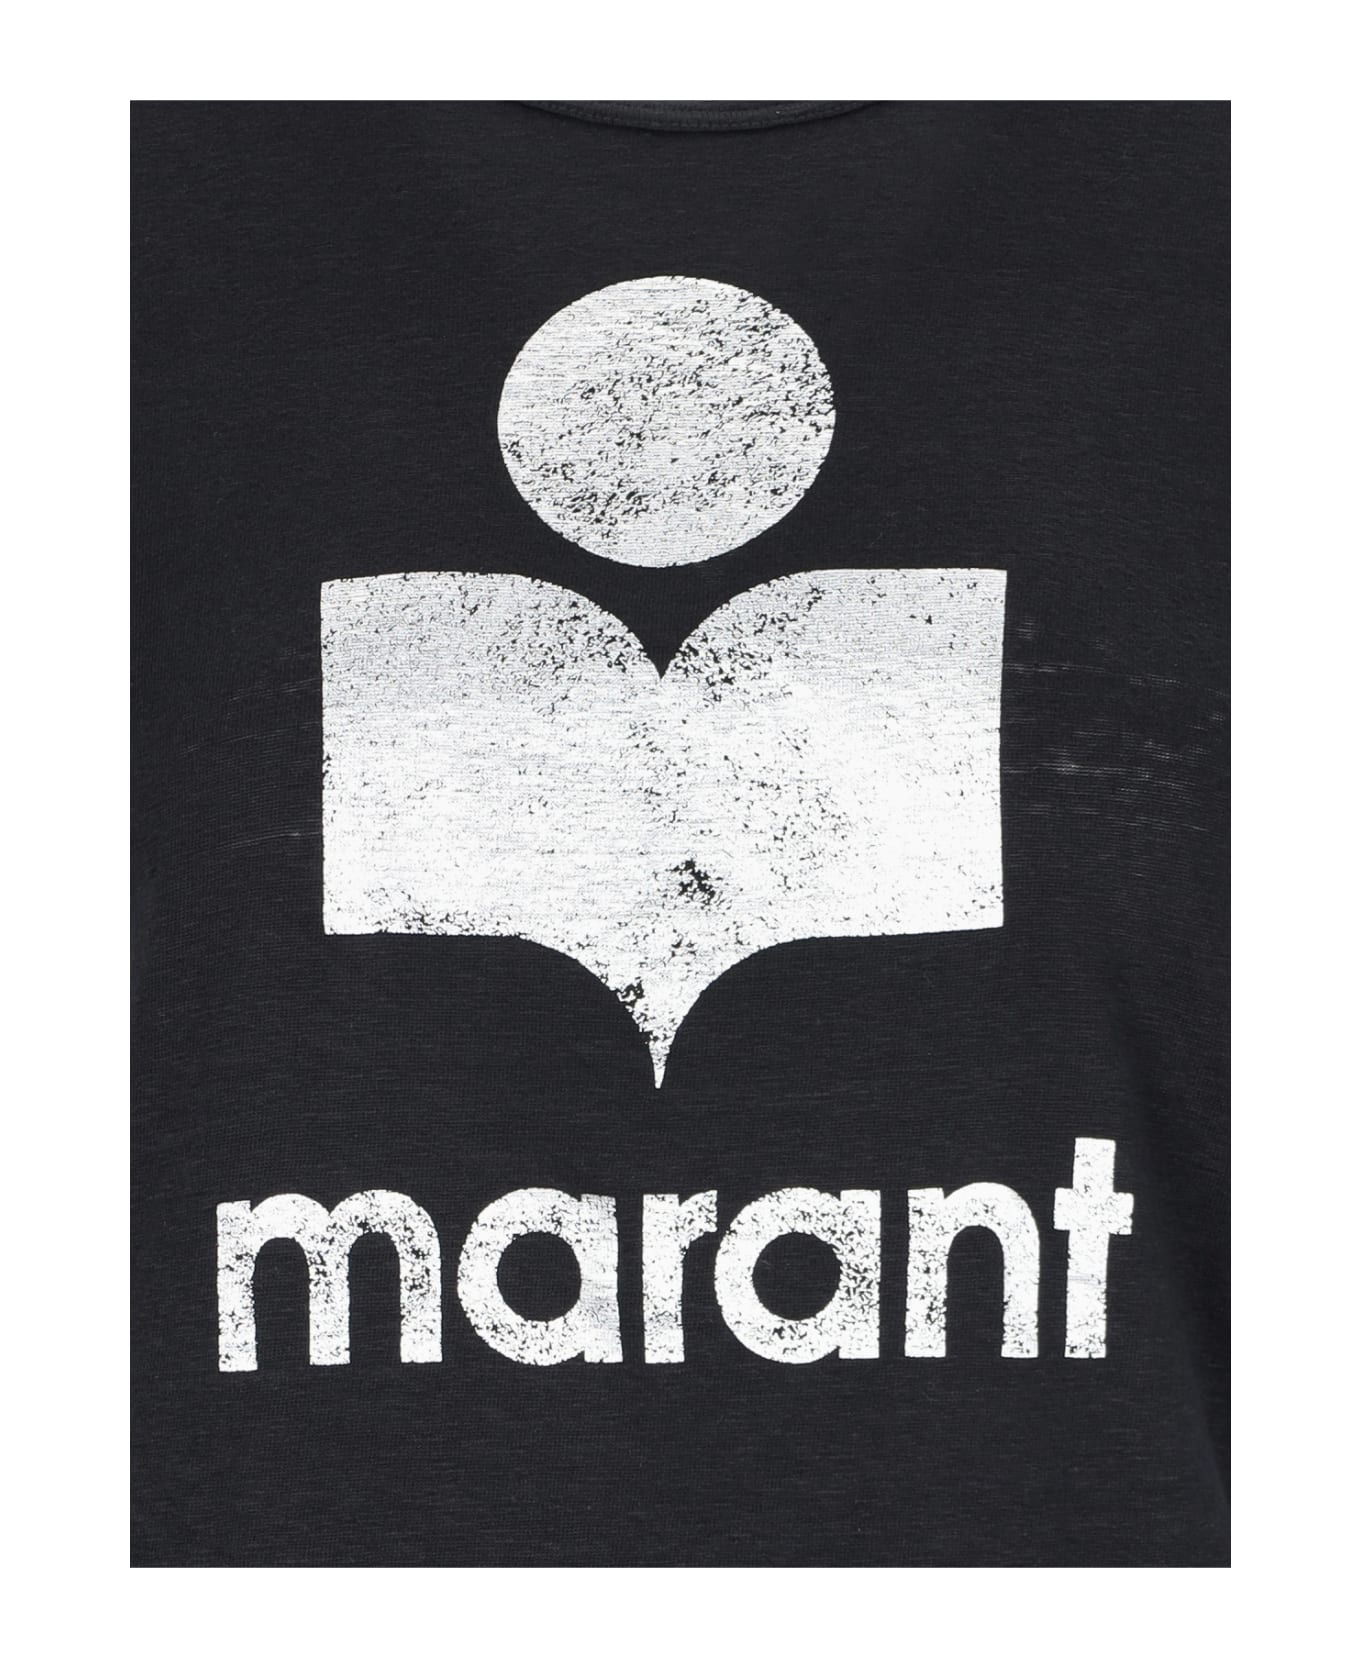 Marant Étoile 'koldi' T-shirt - Black  